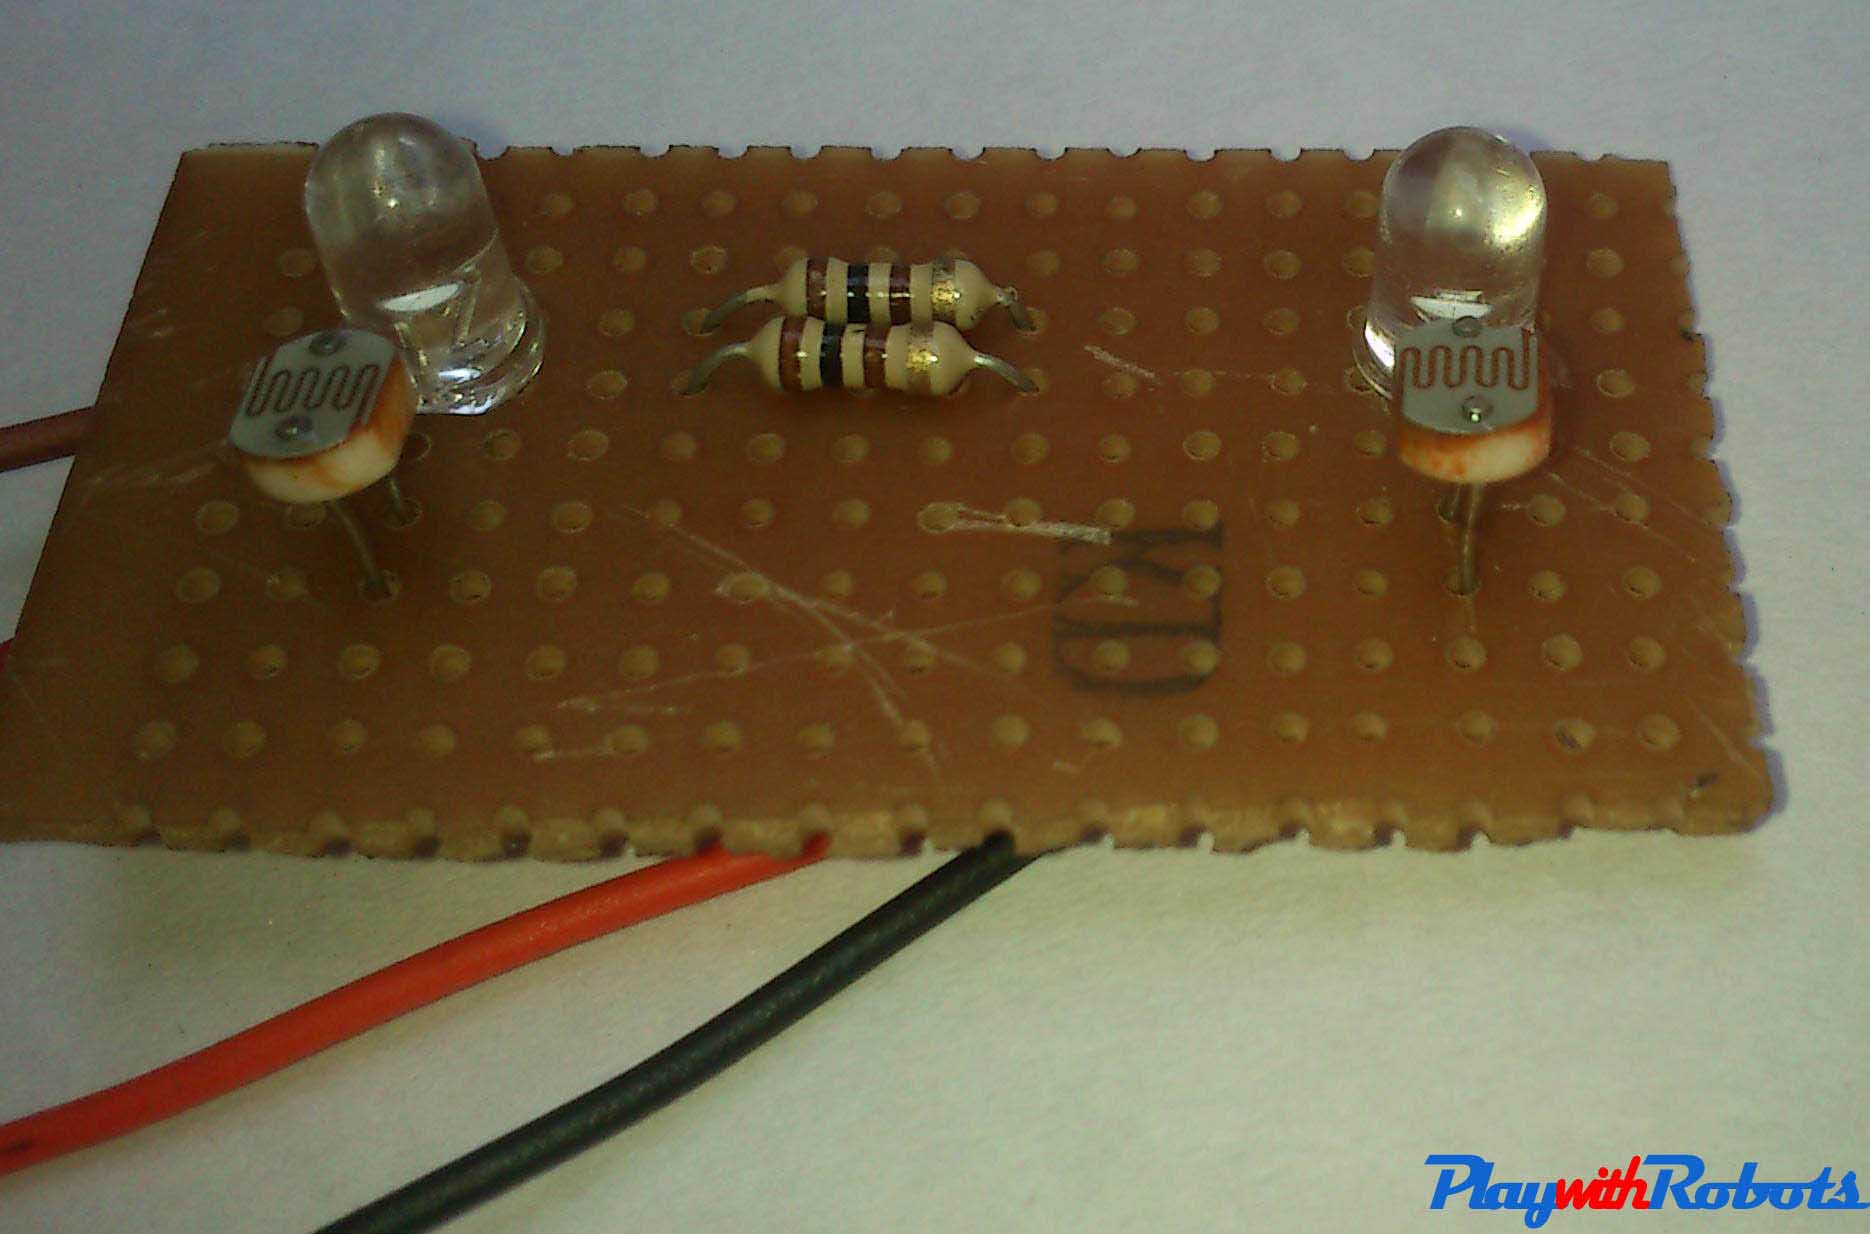 Sensor Part soldered